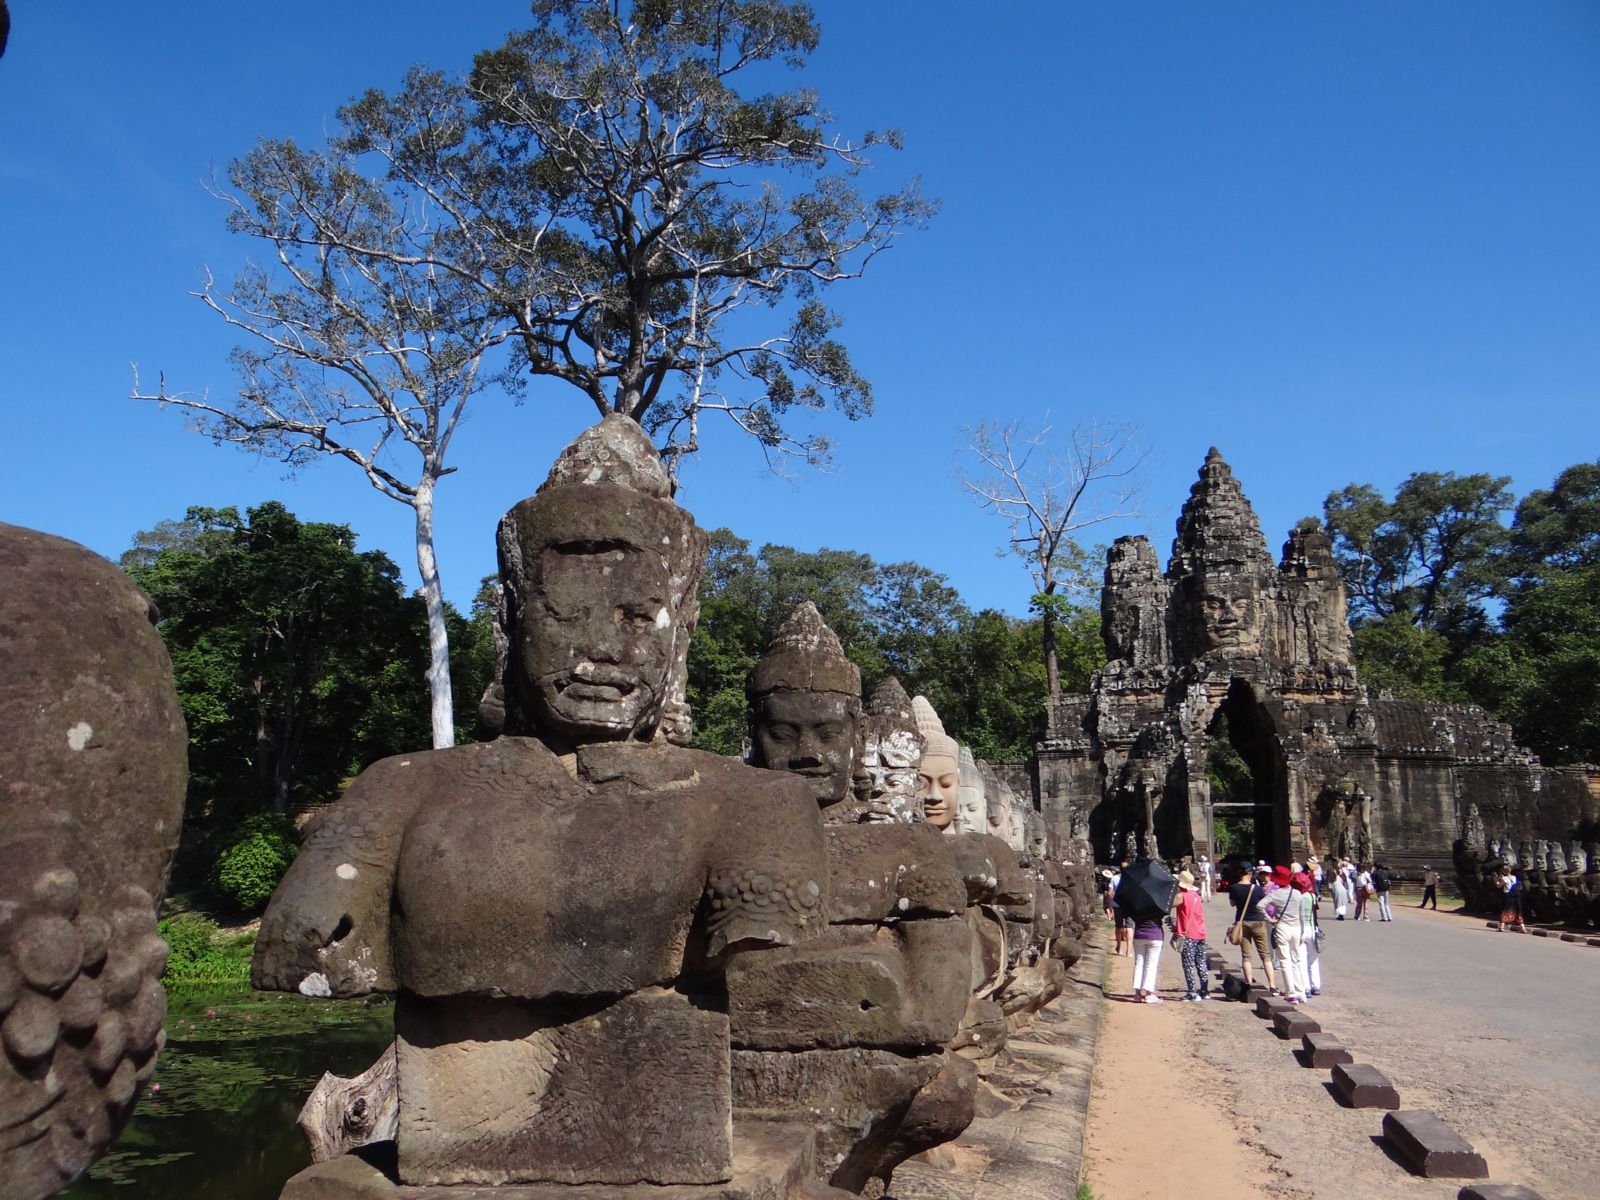 Voyage au Cambodge en 2016. 1ère partie. Banlung. Kratie. Kampong Cham. Siem Rep.